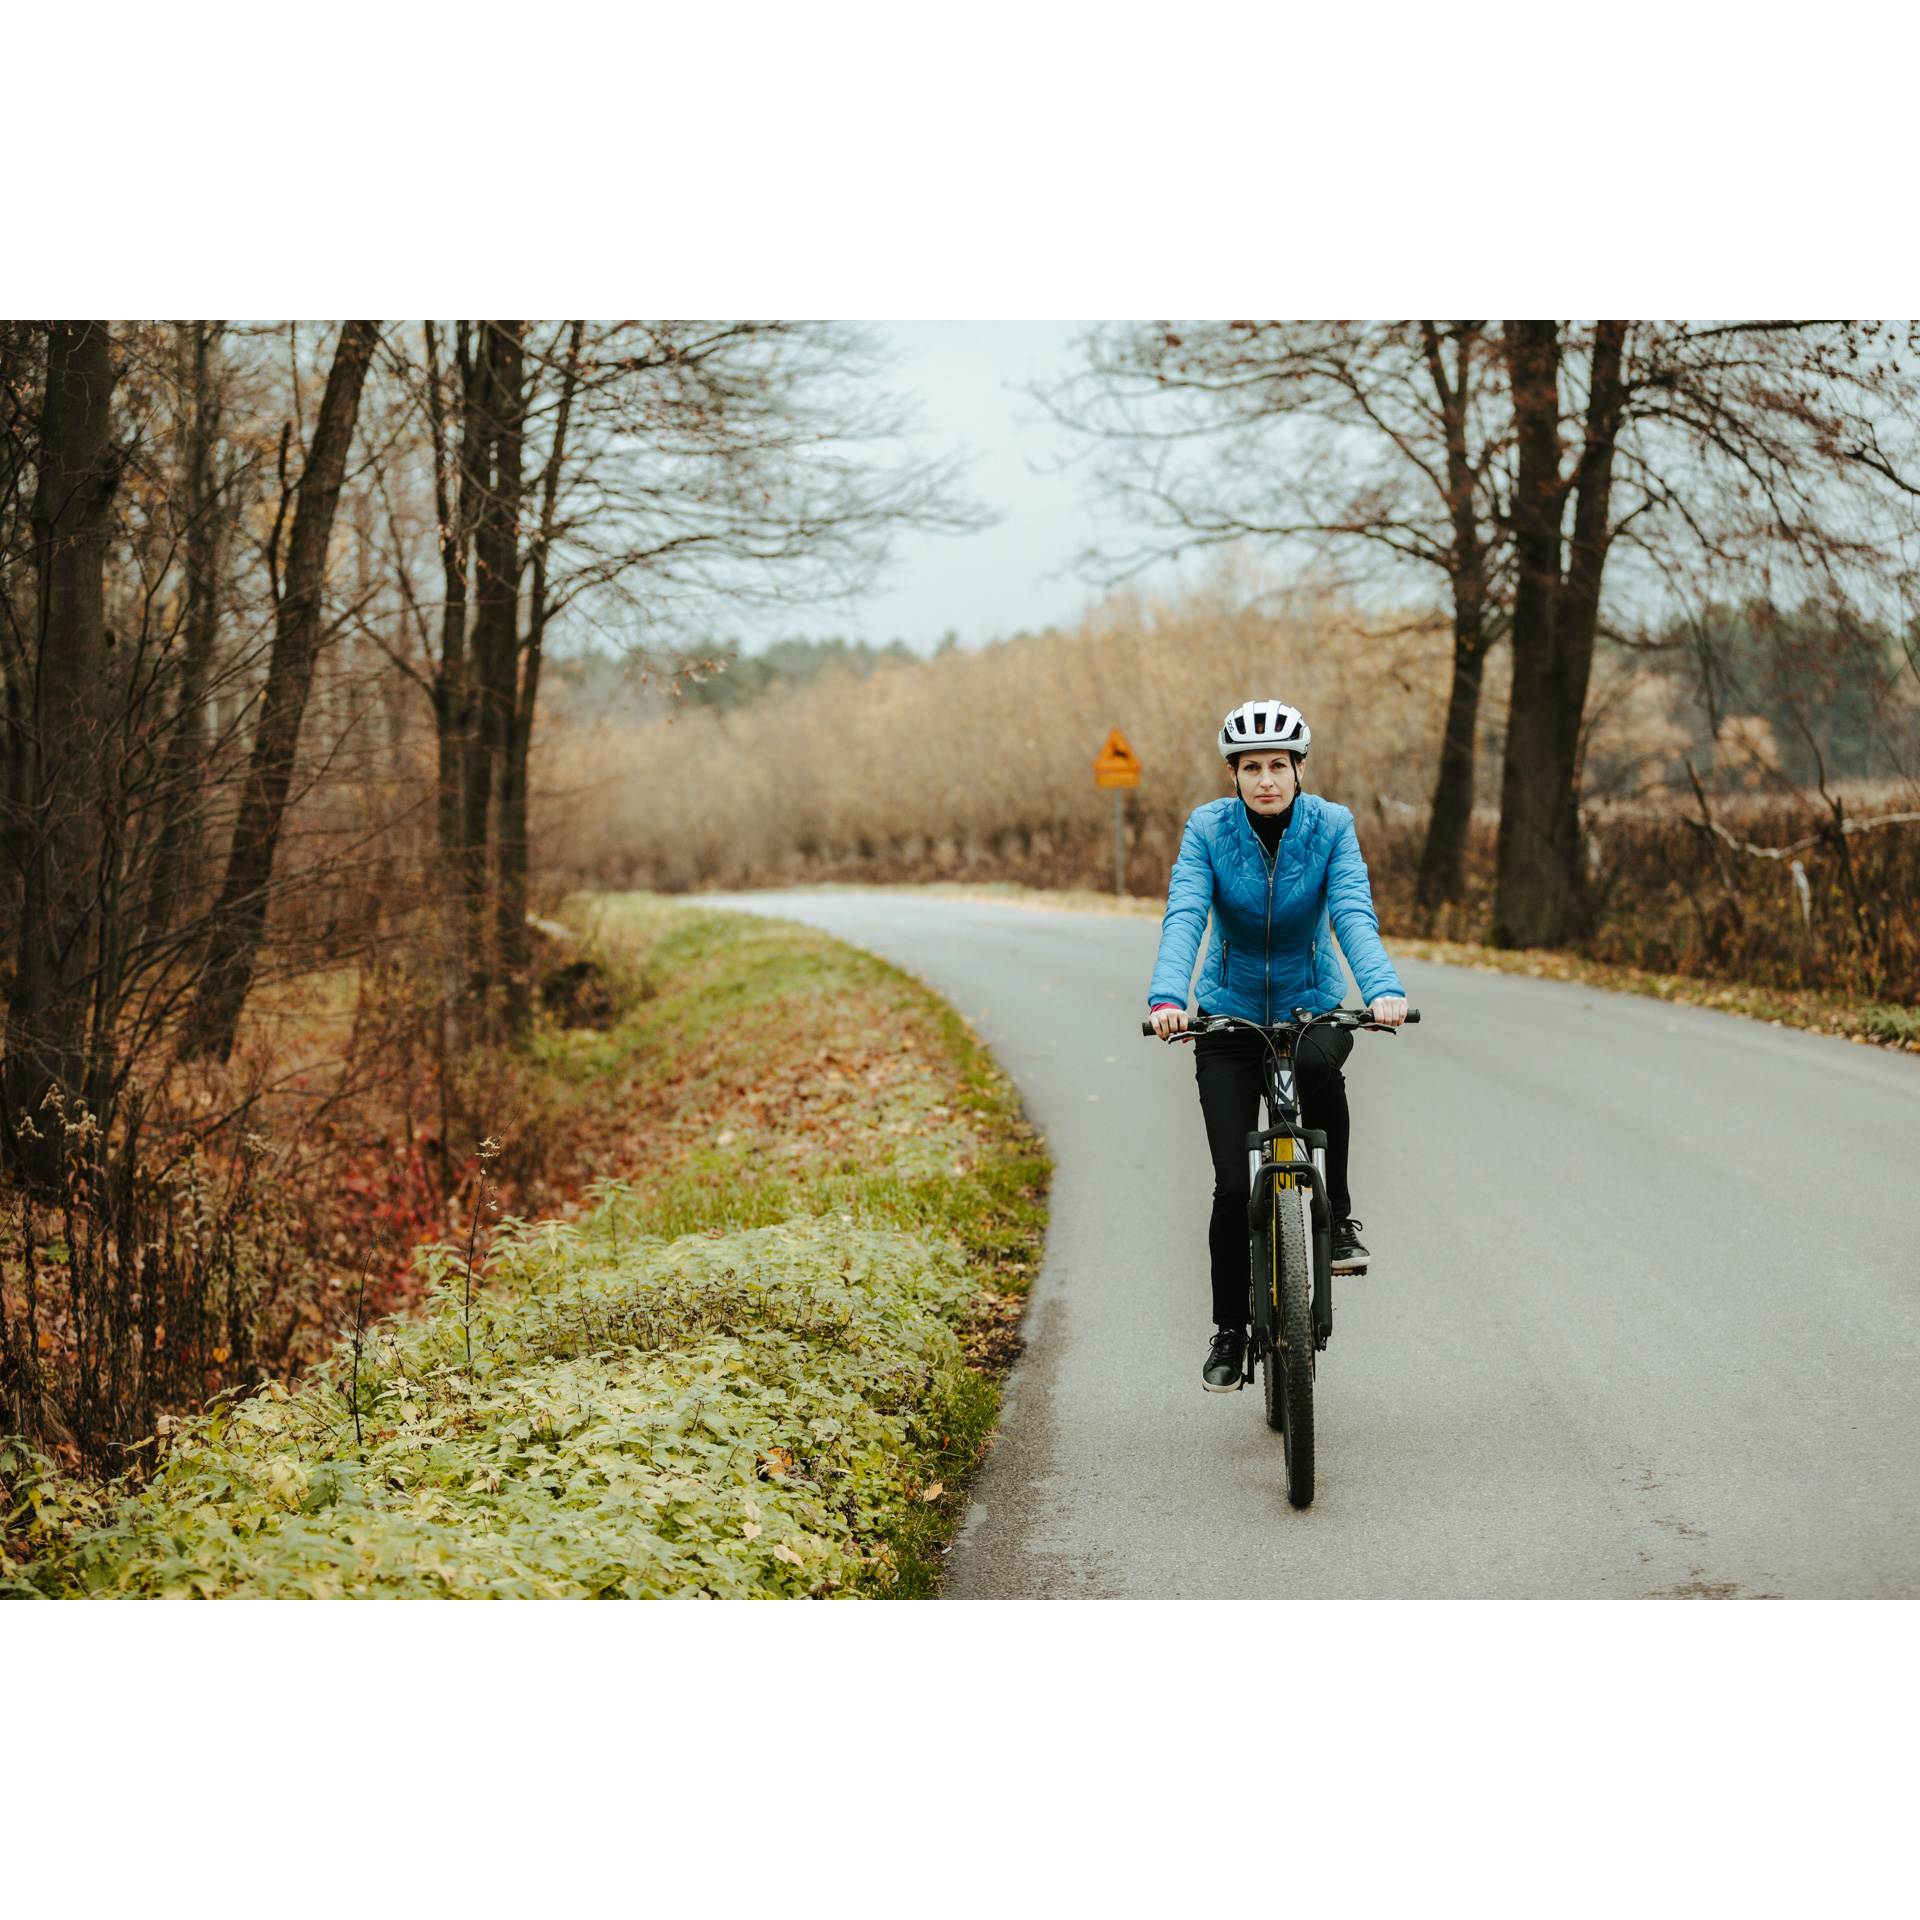 Rowerzystka w niebieskiej kurtce i białym kasku jadąca na rowerze asfaltową drogą, mijająca kolorowe drzewa i krzewy